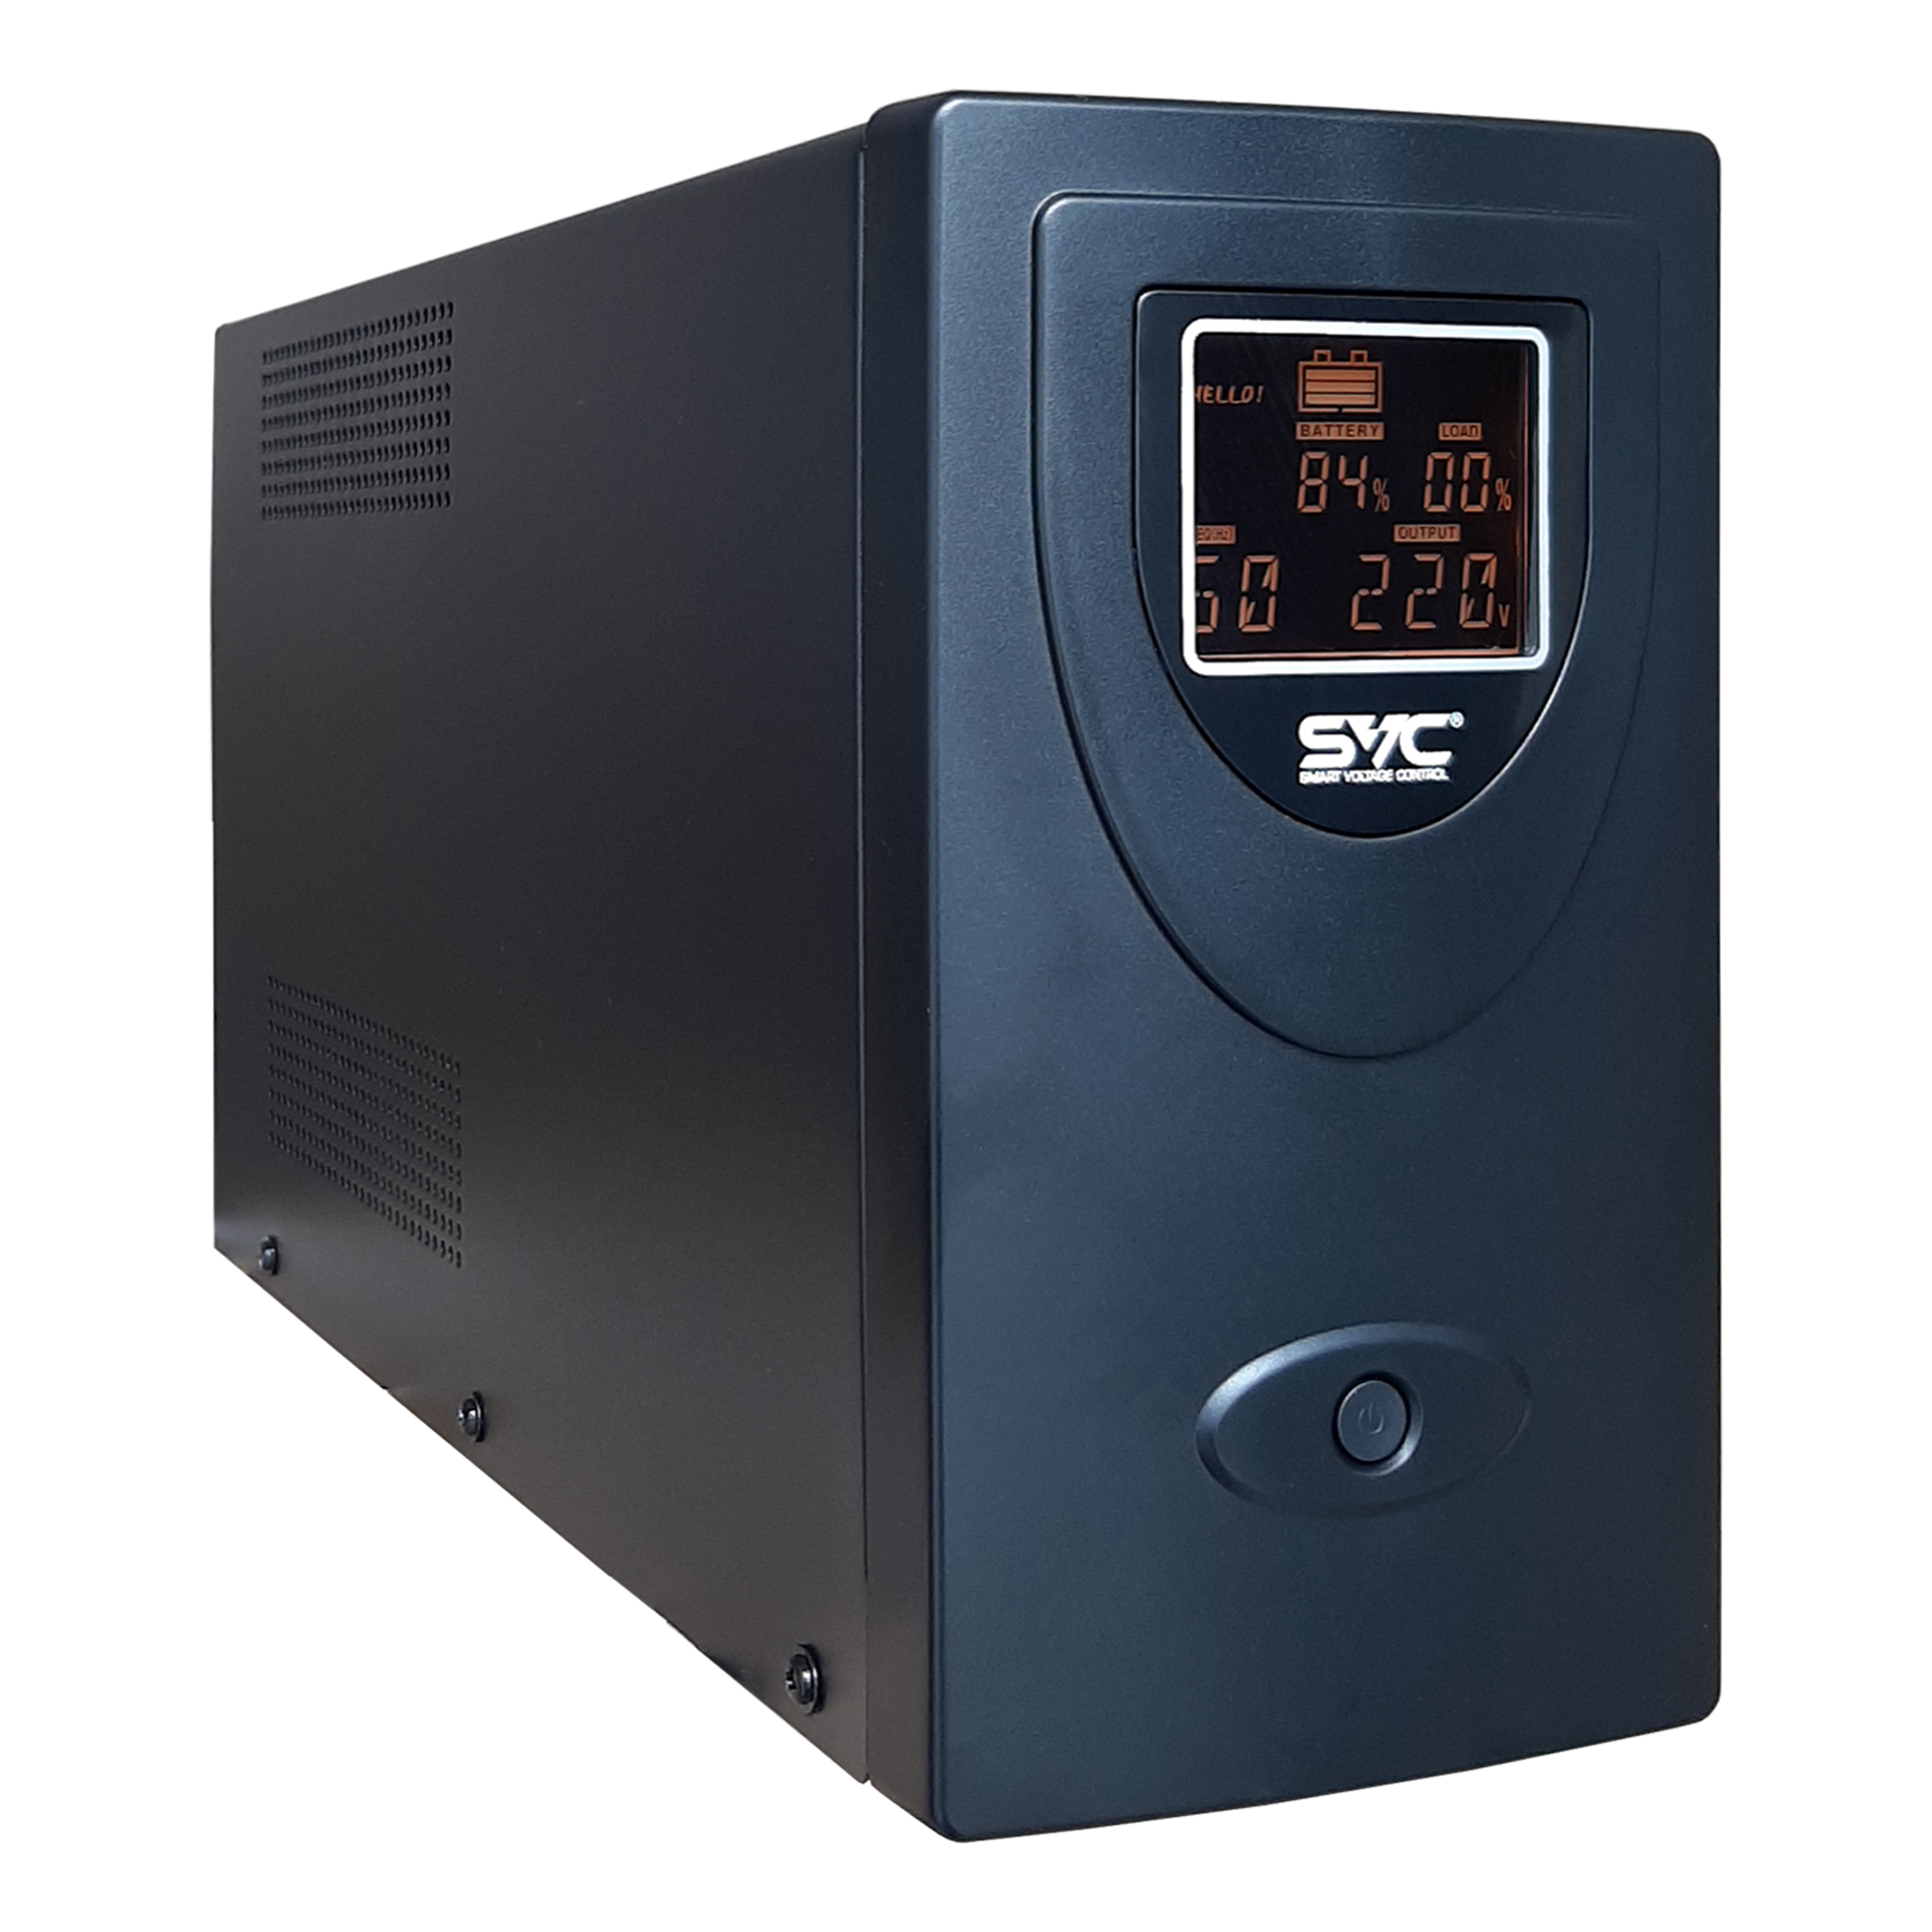 ИБП SVC V-2000-R-LCD/4SC, 2000 В·А, 1.2 кВт, EURO, розеток - 2, USB, черный (V-2000-R-LCD/4SC) V-2000-R-LCD/4SC V-2000-R-LCD/4SC - фото 1